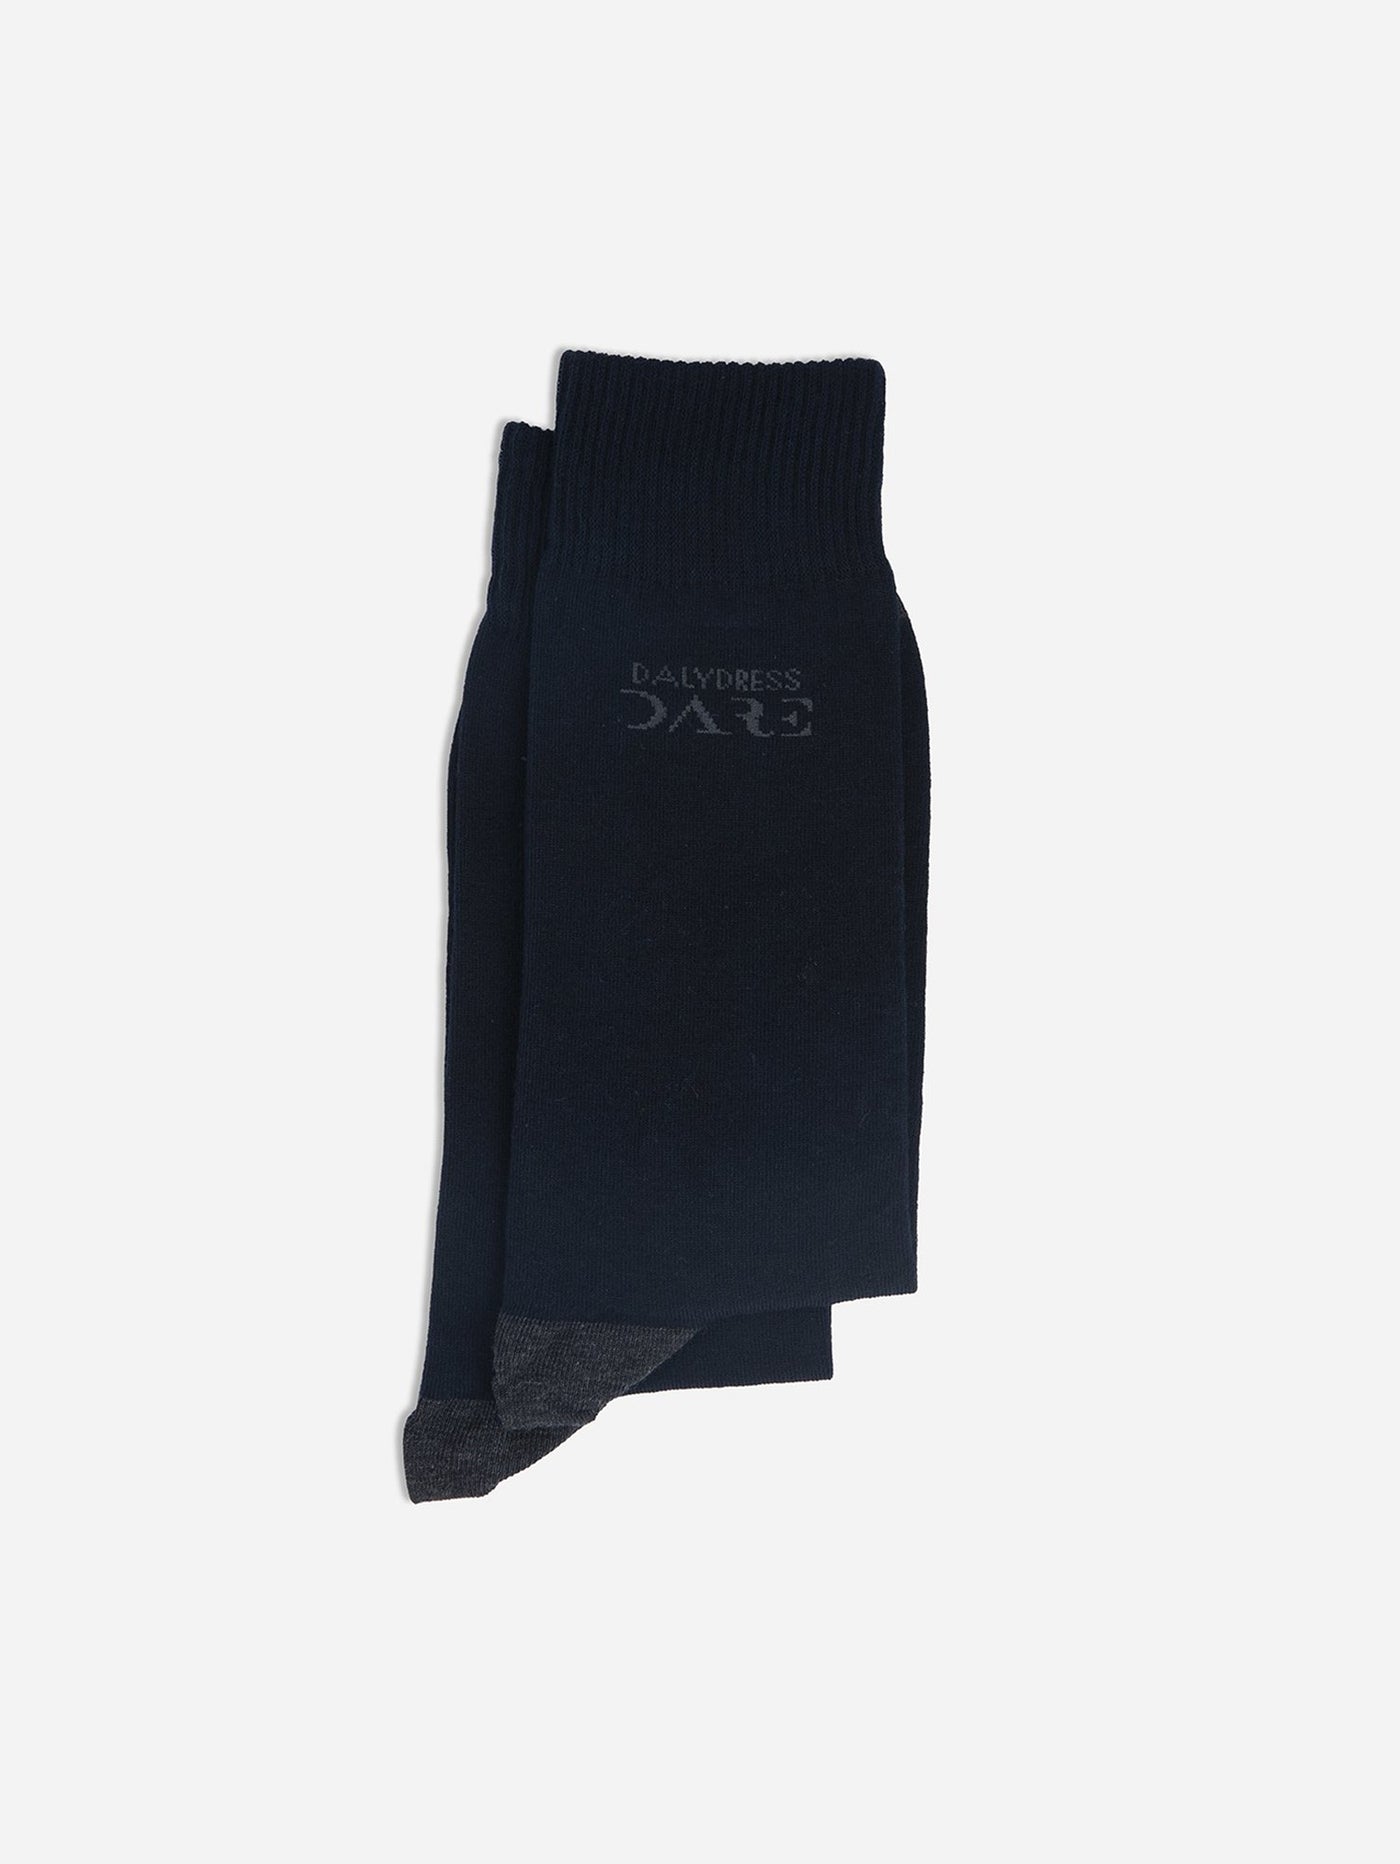 Socks - Basic Slip-on